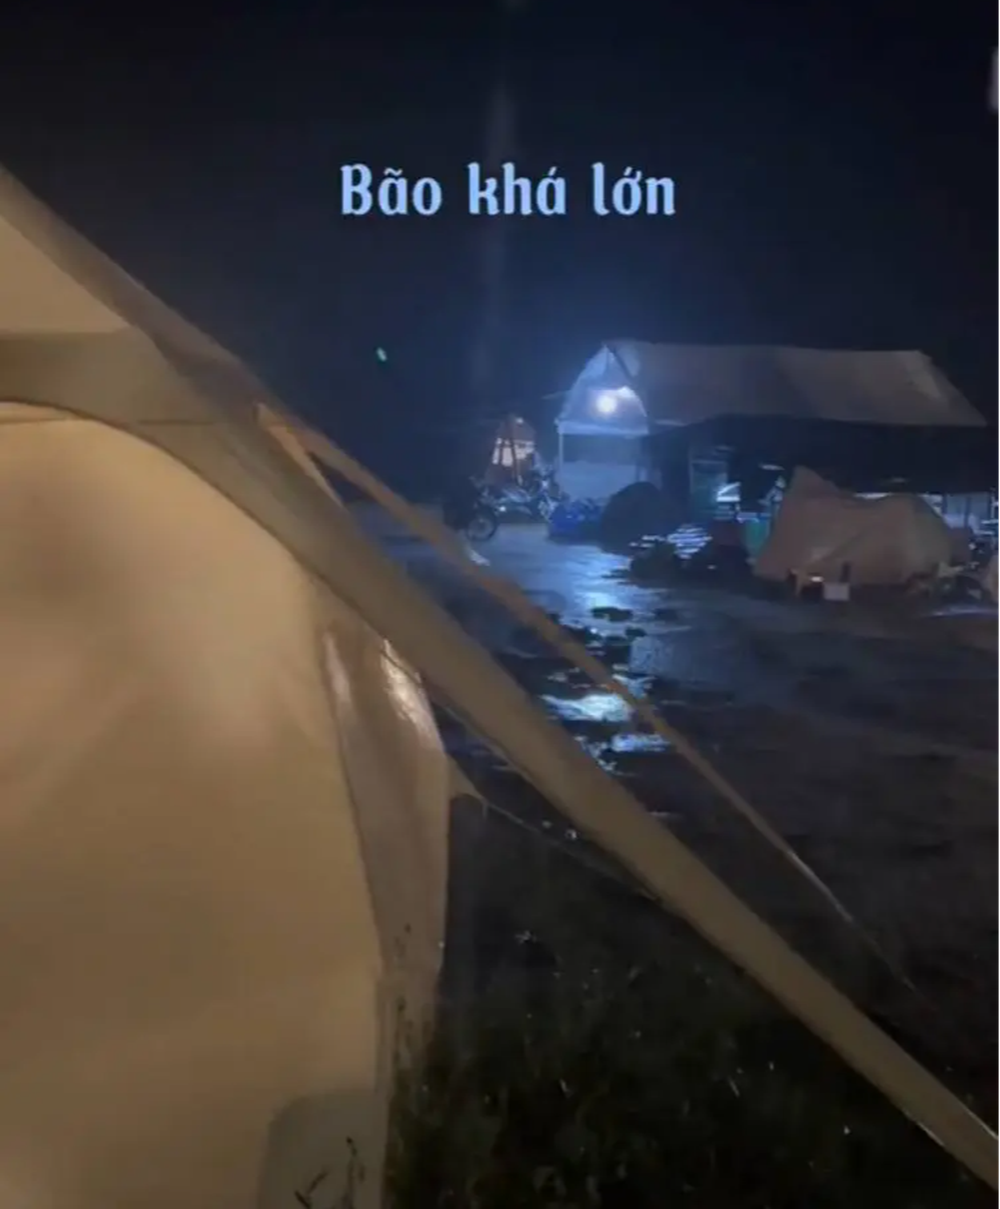 Tranh cãi chuyện mua tour cắm trại hồ Dầu Tiếng với giá 650k/người trong ngày mưa bão - Ảnh 2.